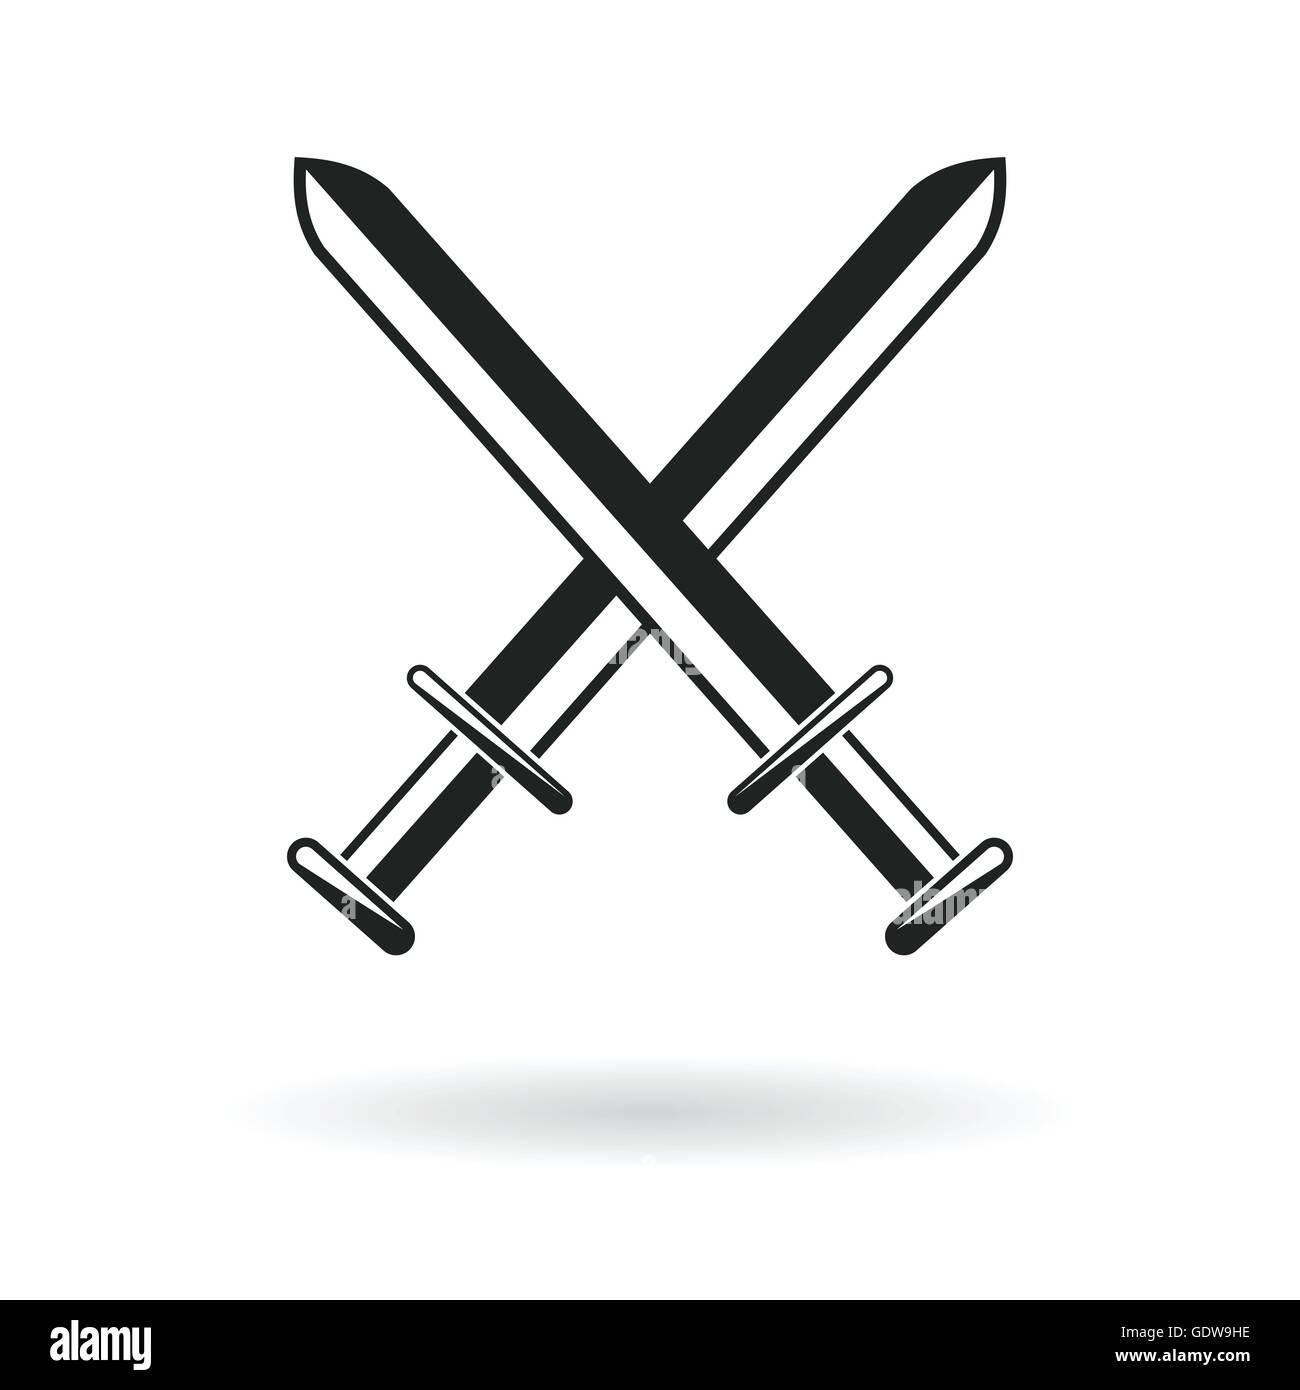 Le spade incrociate protezione braccio simbolo di sicurezza abstract  illustrazione vettoriale Immagine e Vettoriale - Alamy